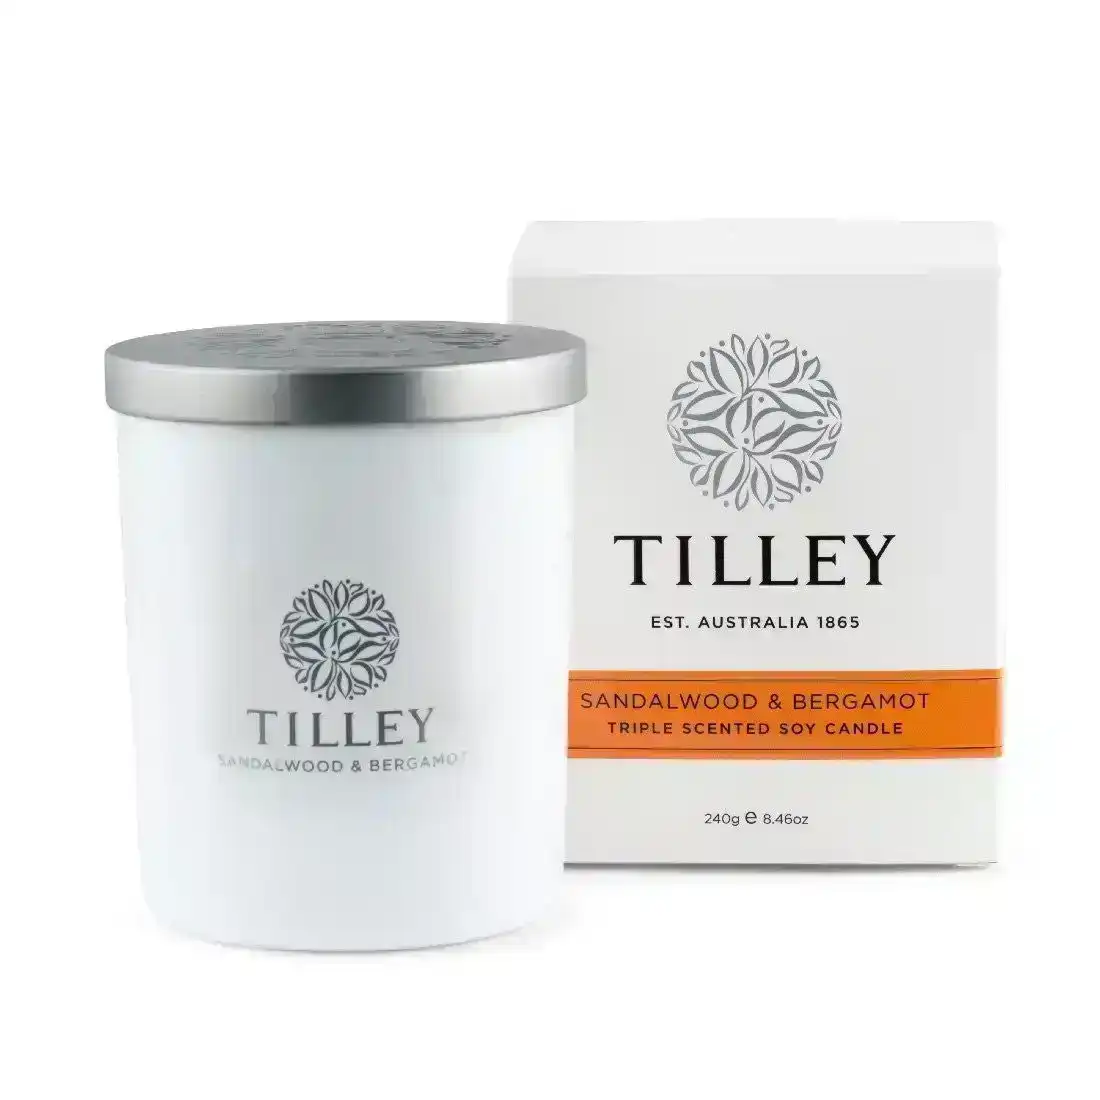 Tilley Classic White - Soy Candle 240g - Sandalwood & Bergamot